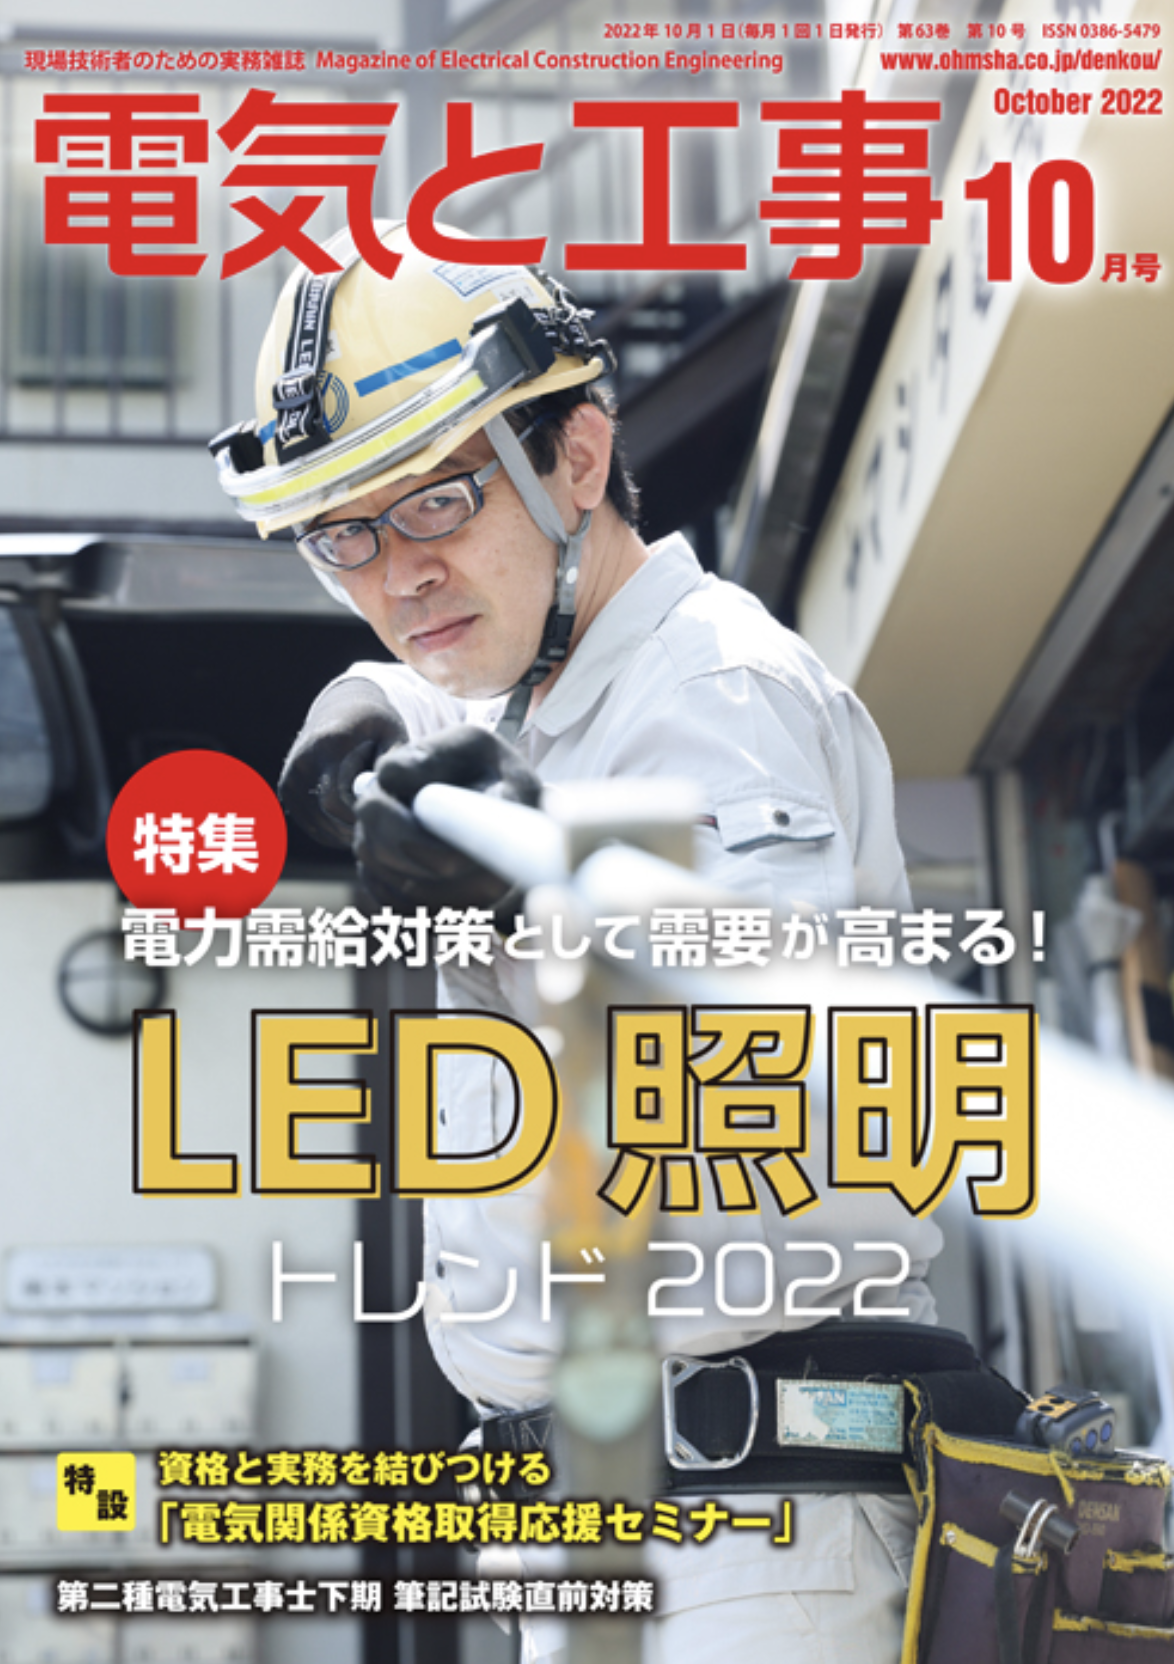 【新刊トピックス 2022年9月】電気と工事 2022年10月号 (第63巻第10号通巻830号)の画像